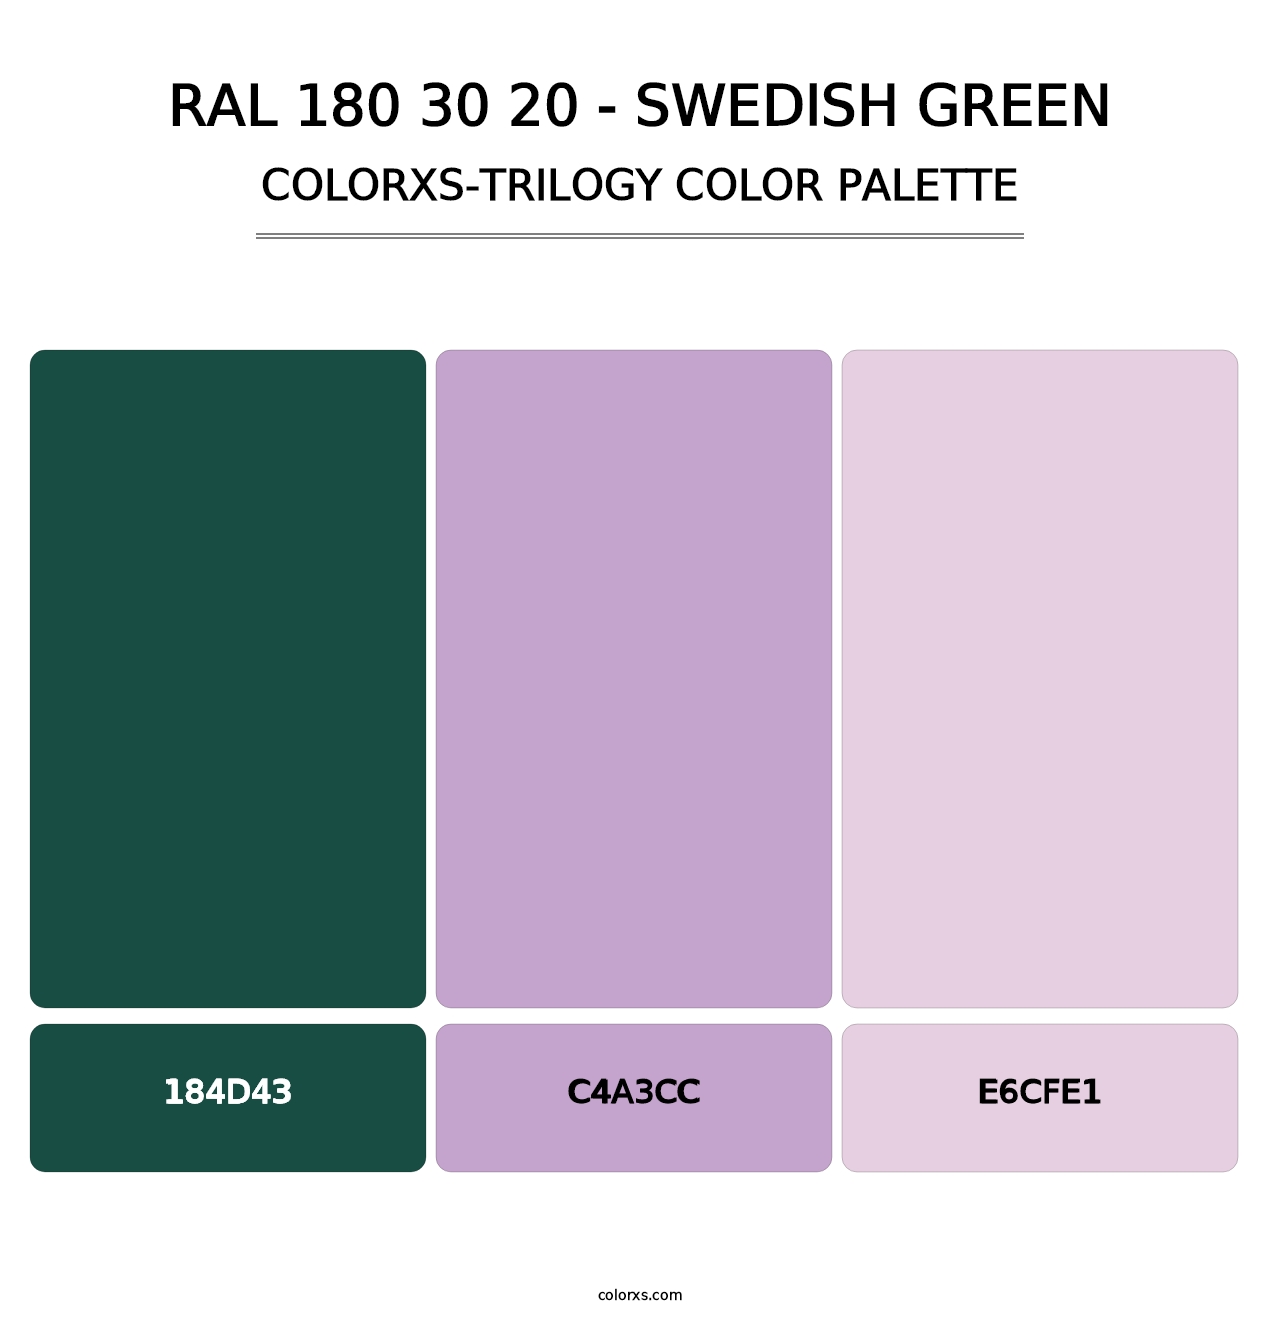 RAL 180 30 20 - Swedish Green - Colorxs Trilogy Palette